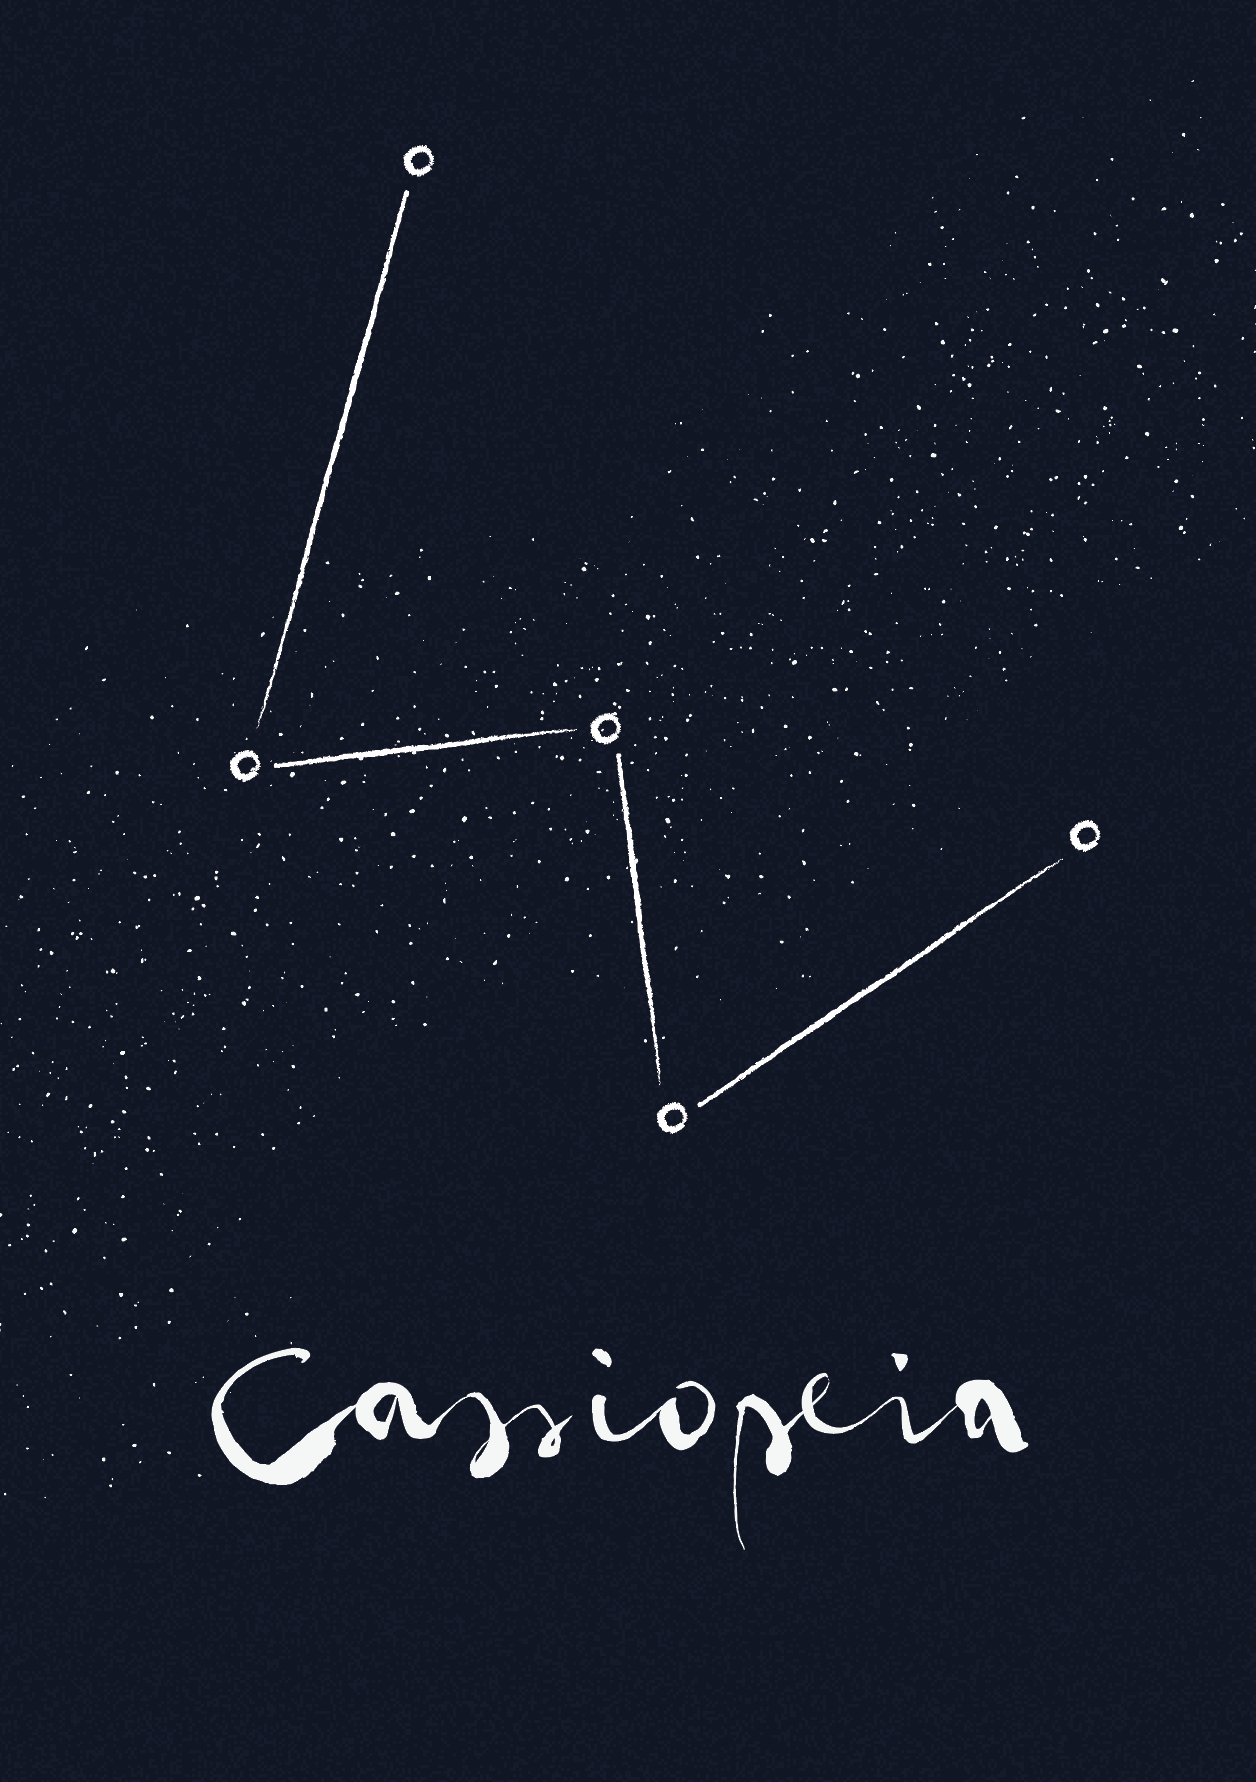 Cassiopeia constellation - Adventures in Astrophysics